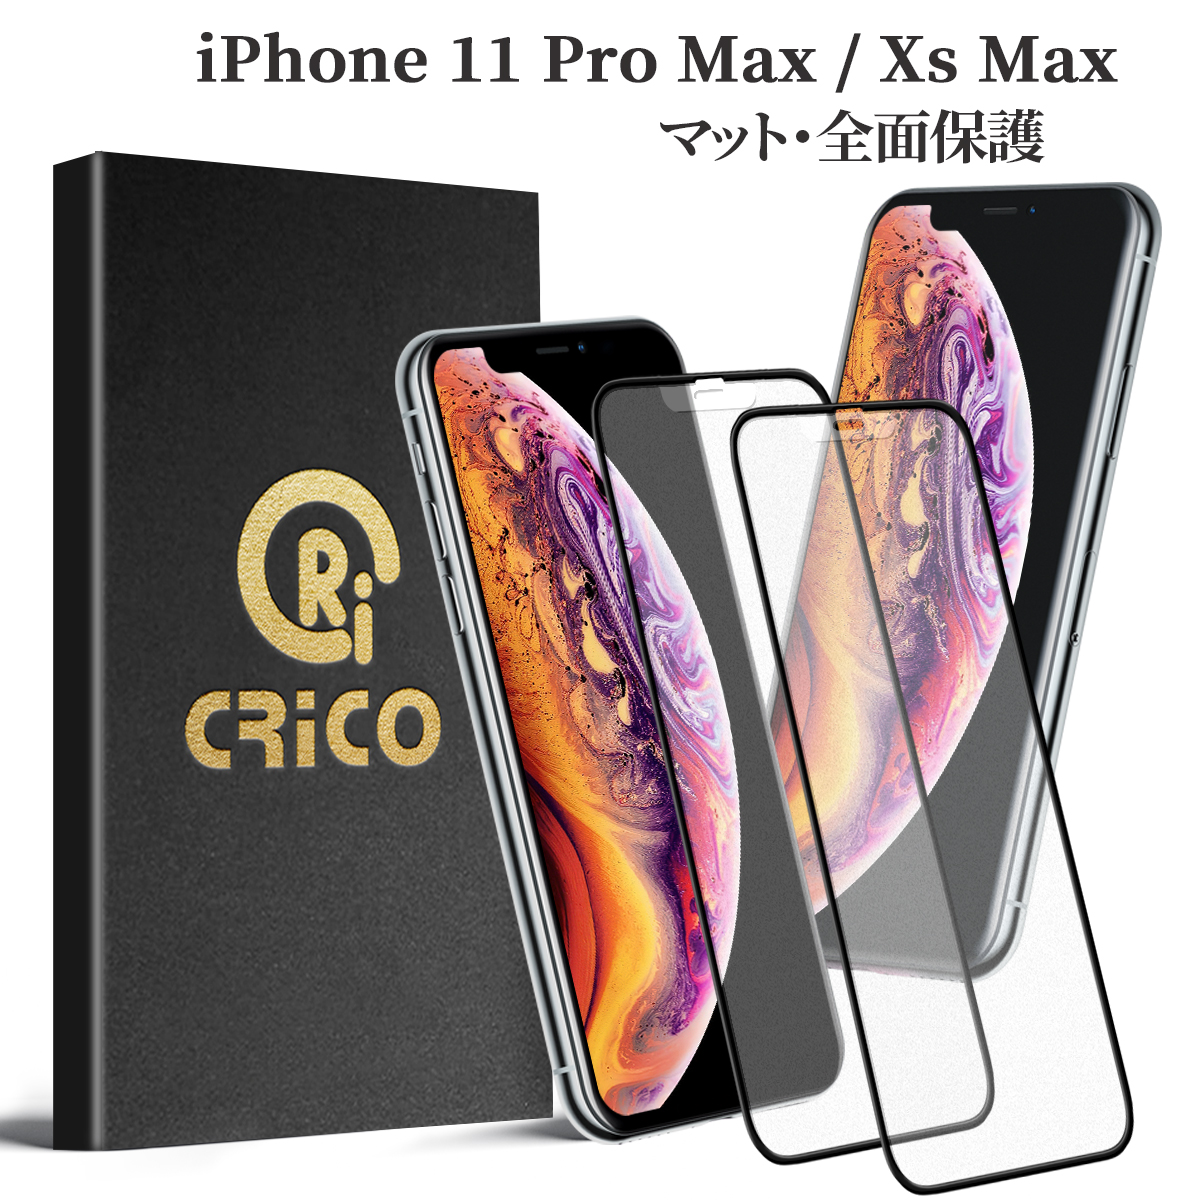 iPhone 11 Pro Max iPhone Xs Max 保護フィルム ガラスフィルム アンチグレア フィルム マット 保護シール 反射防止 9H 強化ガラスフィルム さらさら